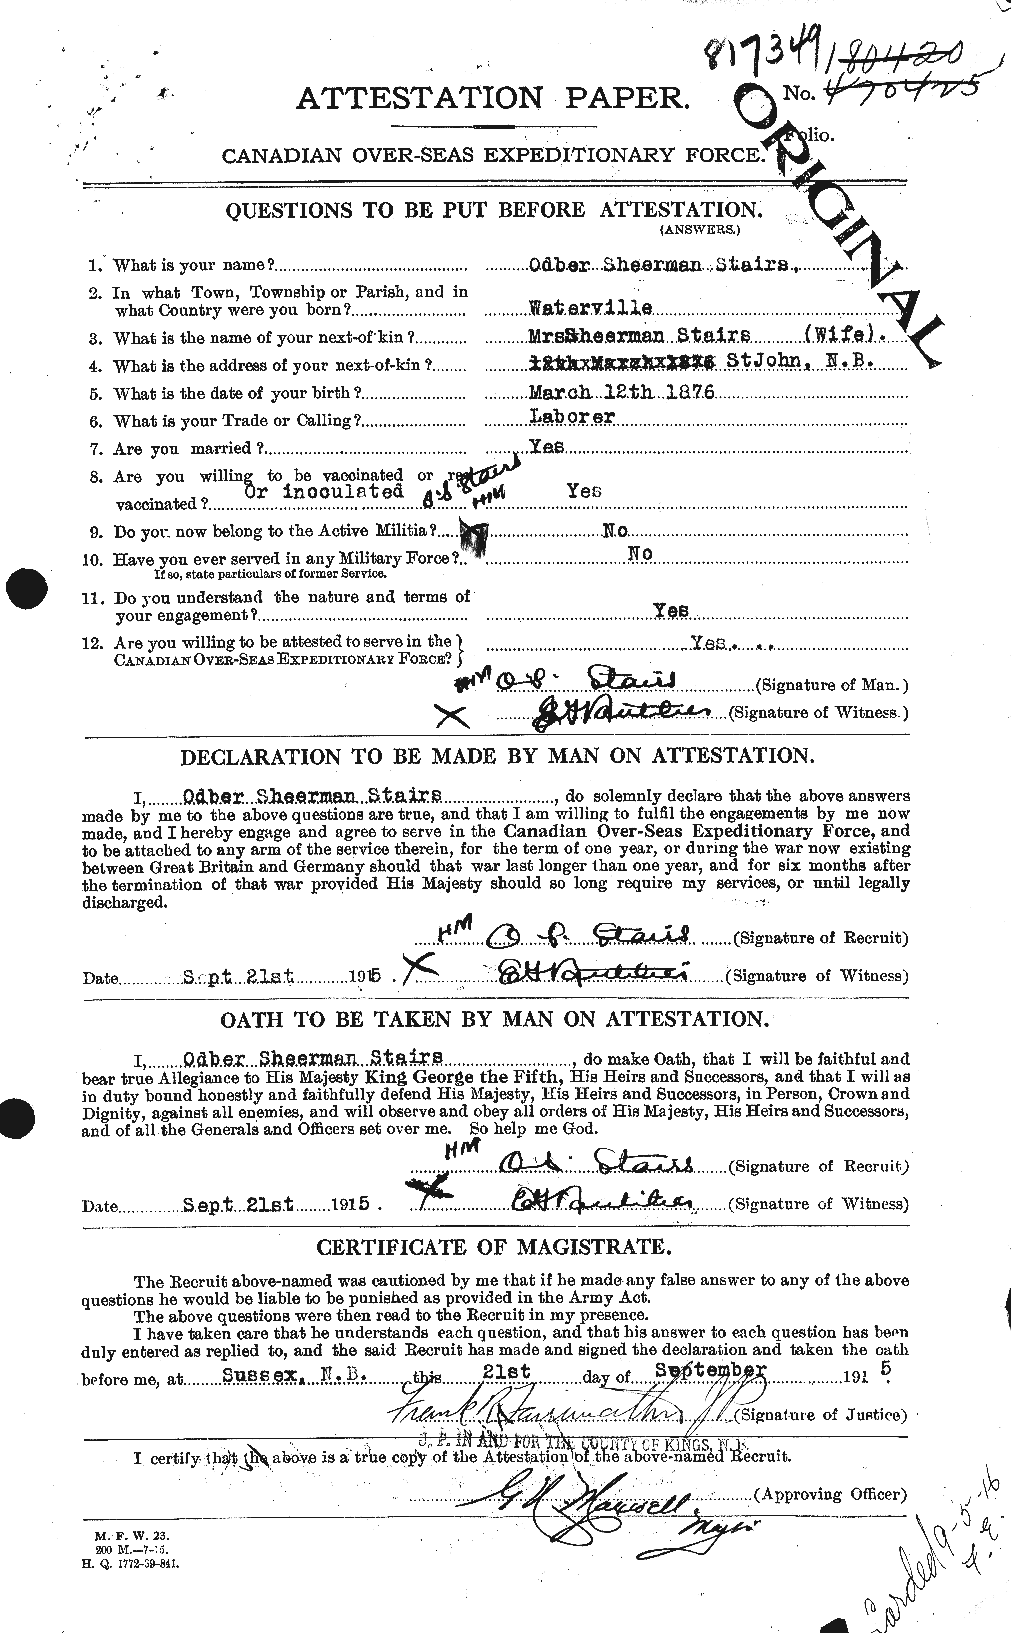 Dossiers du Personnel de la Première Guerre mondiale - CEC 116687a